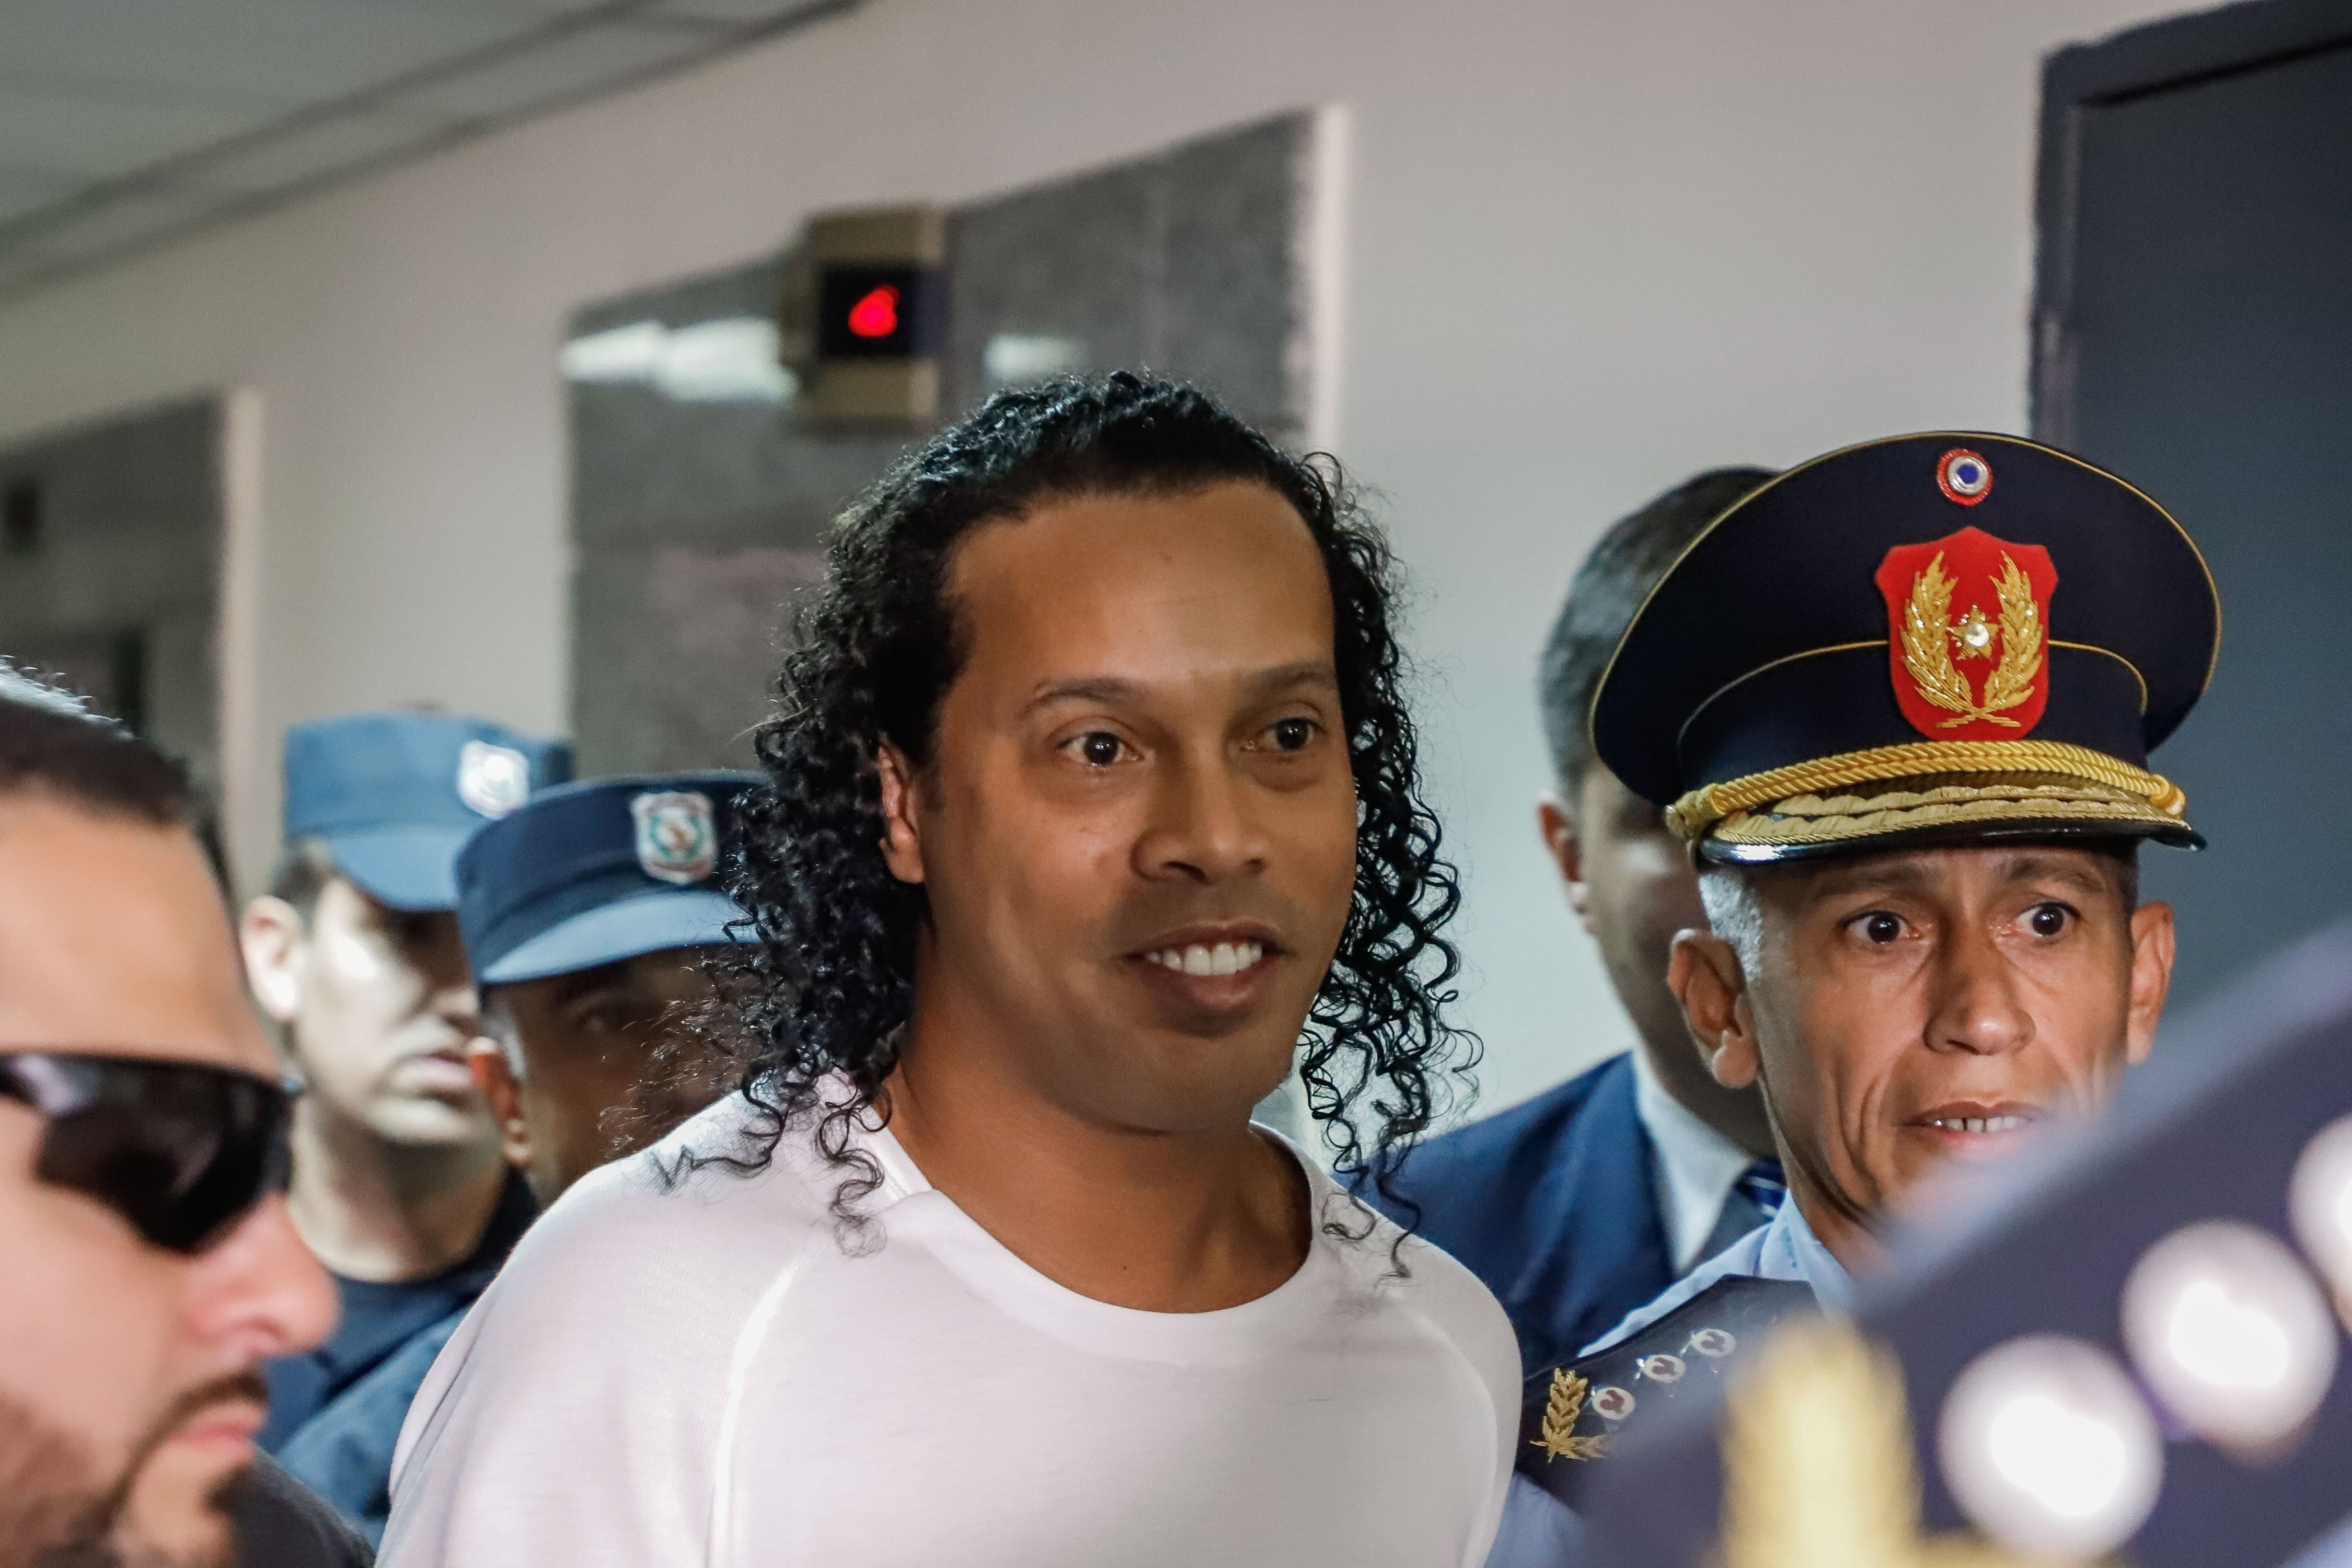 Primer título de Ronaldinho en la prisión y rechazo del recurso de apelación